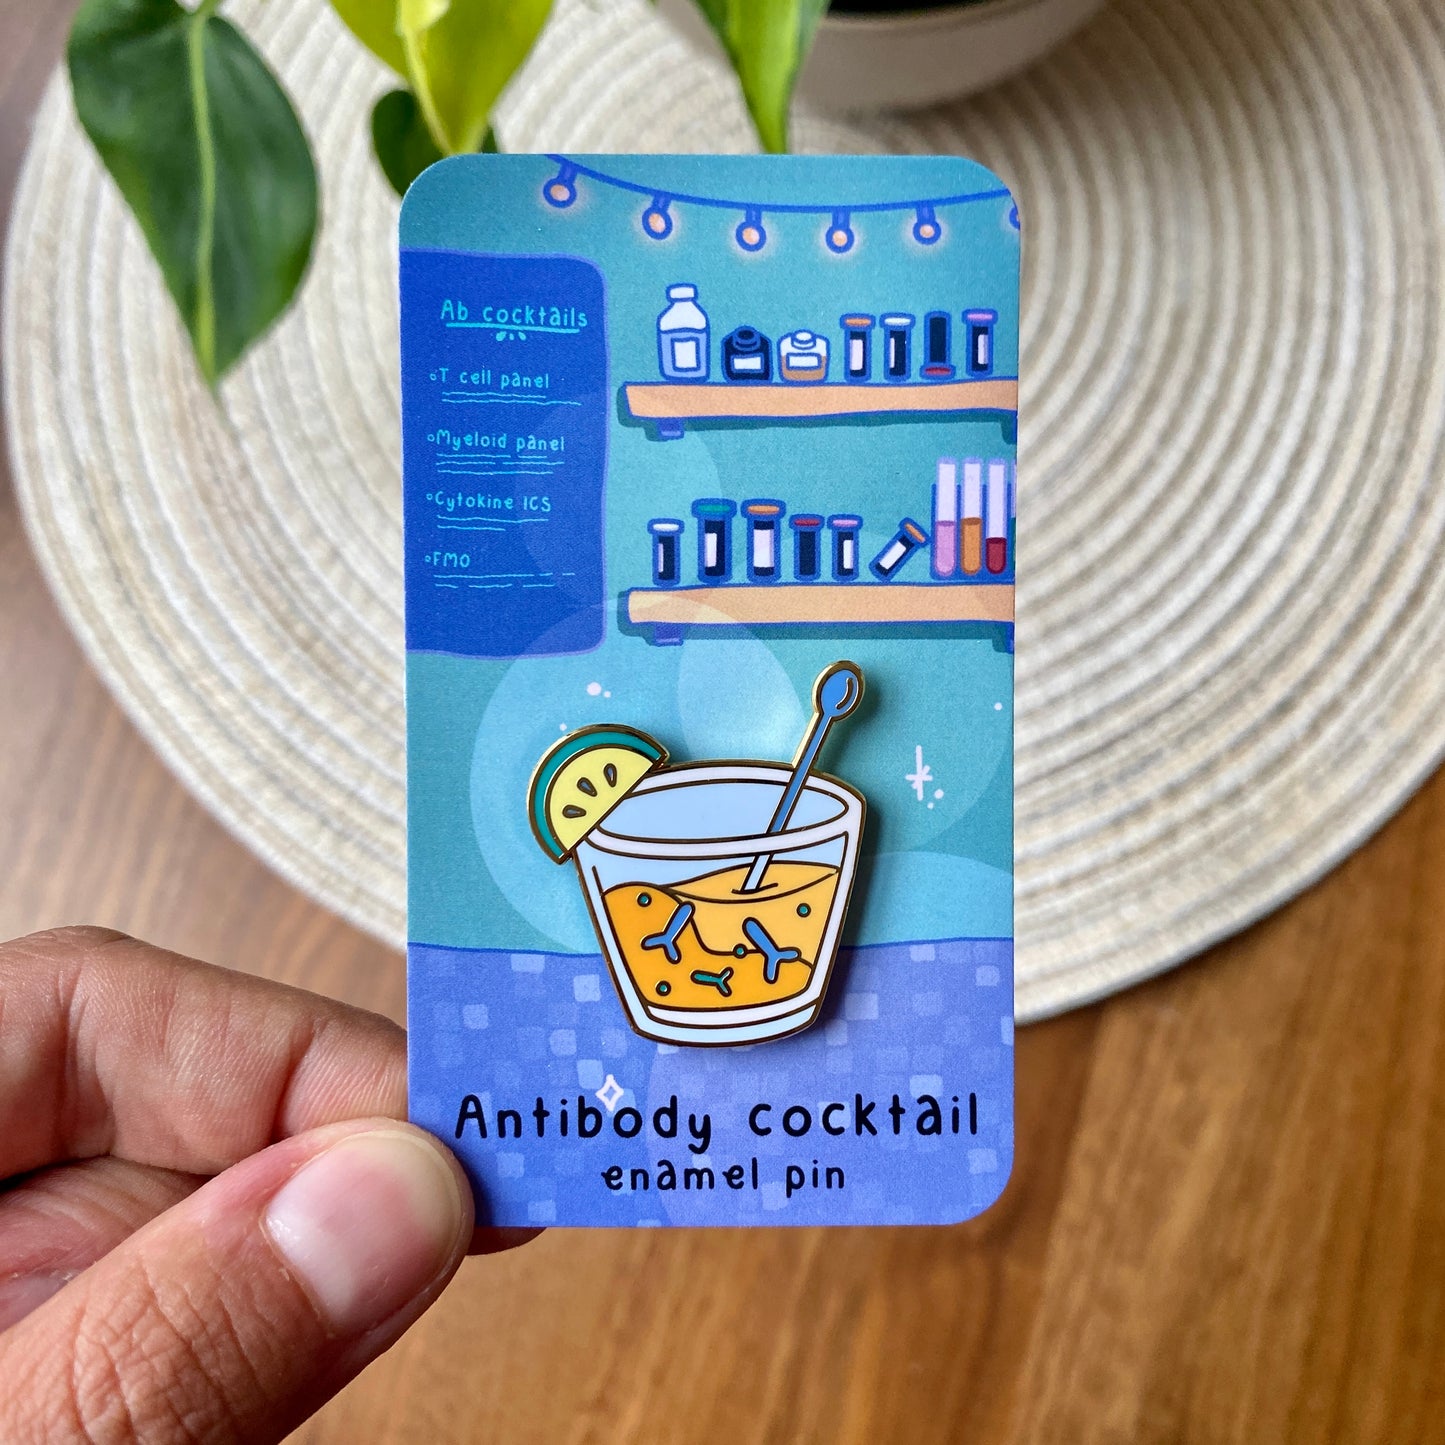 Antibody cocktail enamel pin